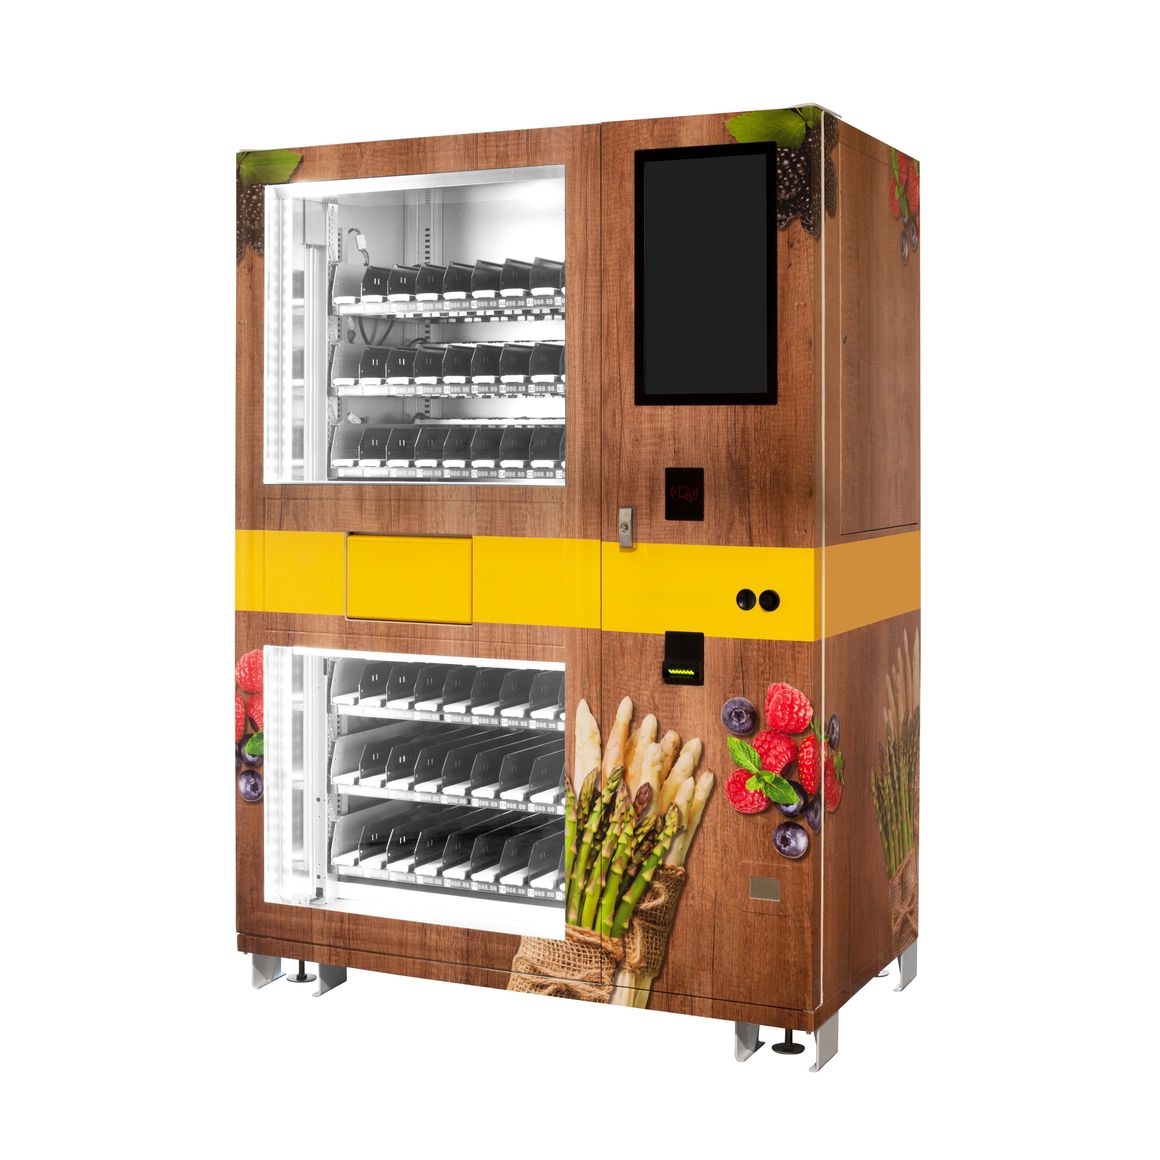 Automat Lemgo als Spargelautomat und Erdbeerautomat